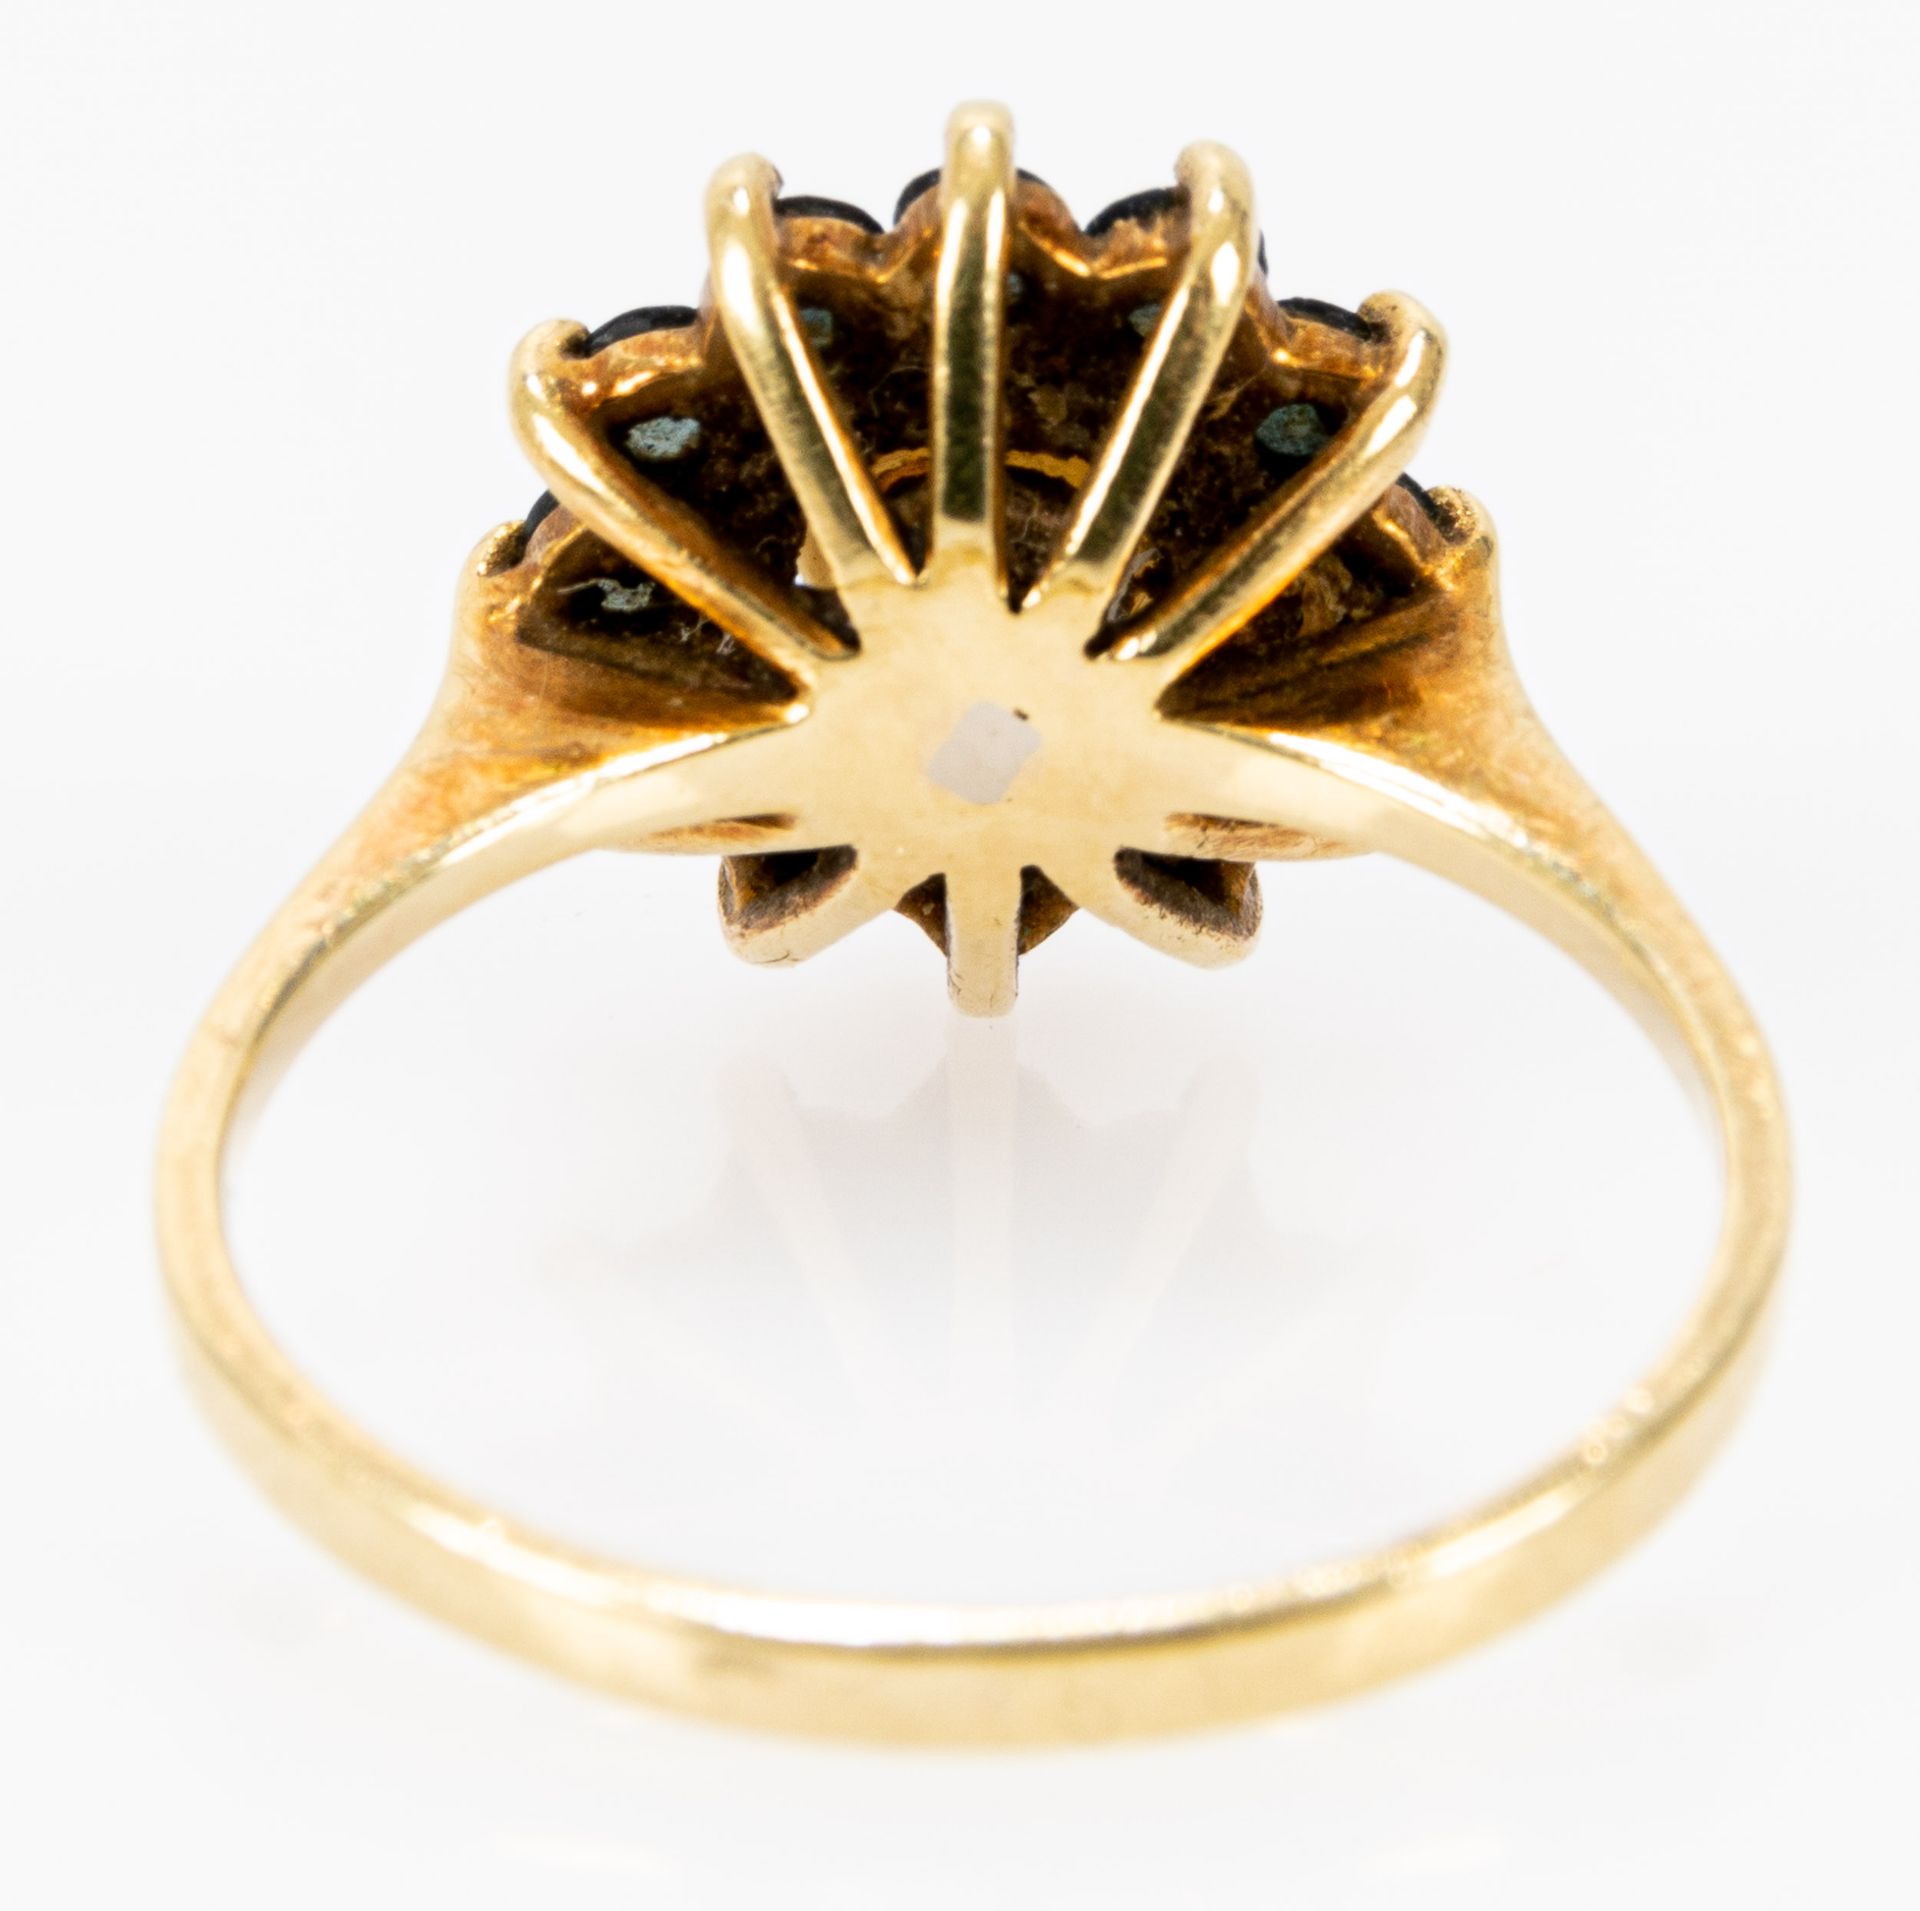 Blütenförmiger Damenring, zarte 585er Gelbgoldfassung, mittig von Perle besetzt und von 12 Saphirsp - Image 5 of 5